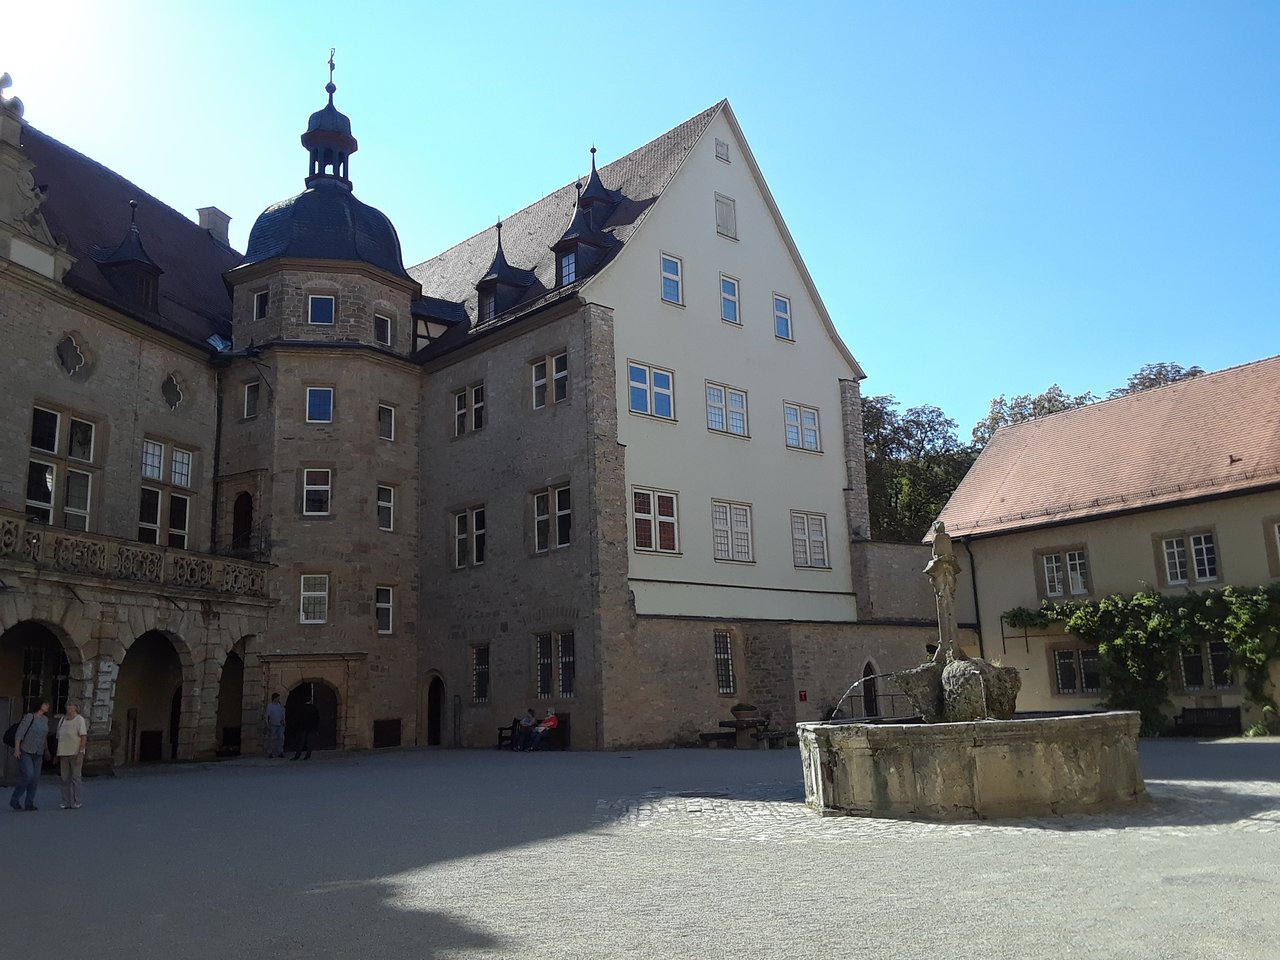 inside the castle courtyard